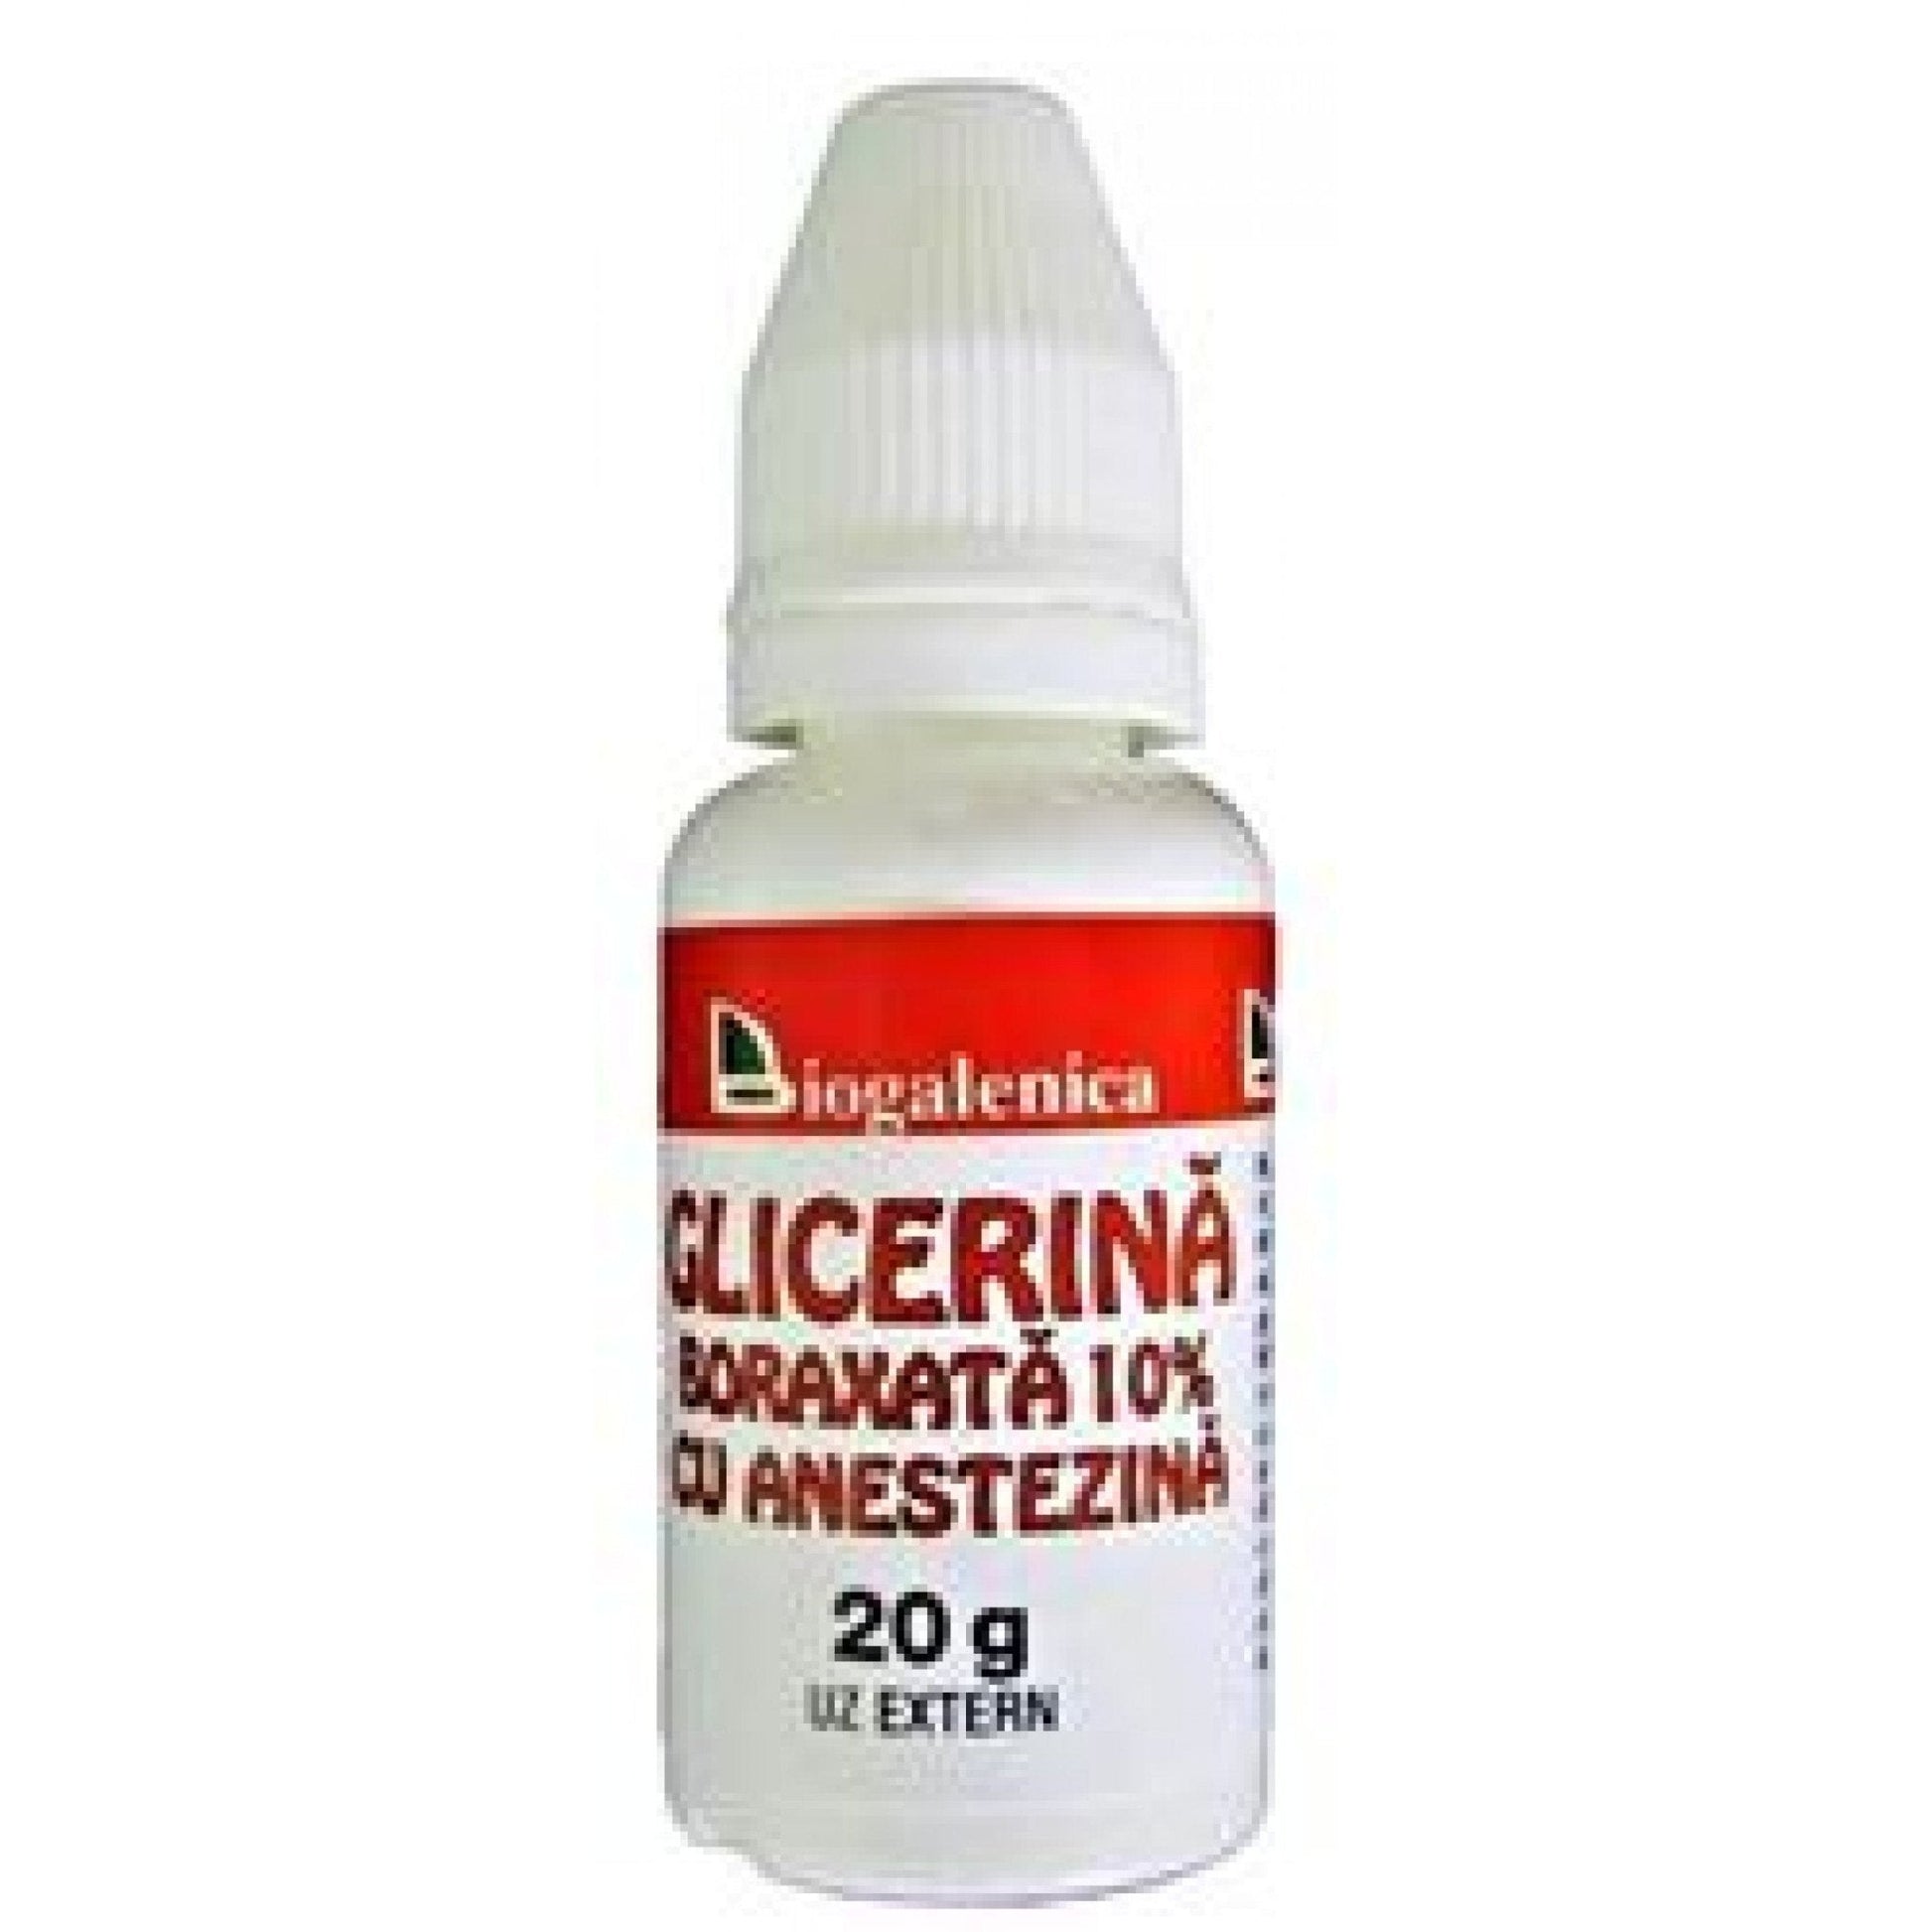 Glicerina Boraxata 10% cu Anestezina, 20g, Biogalenica-